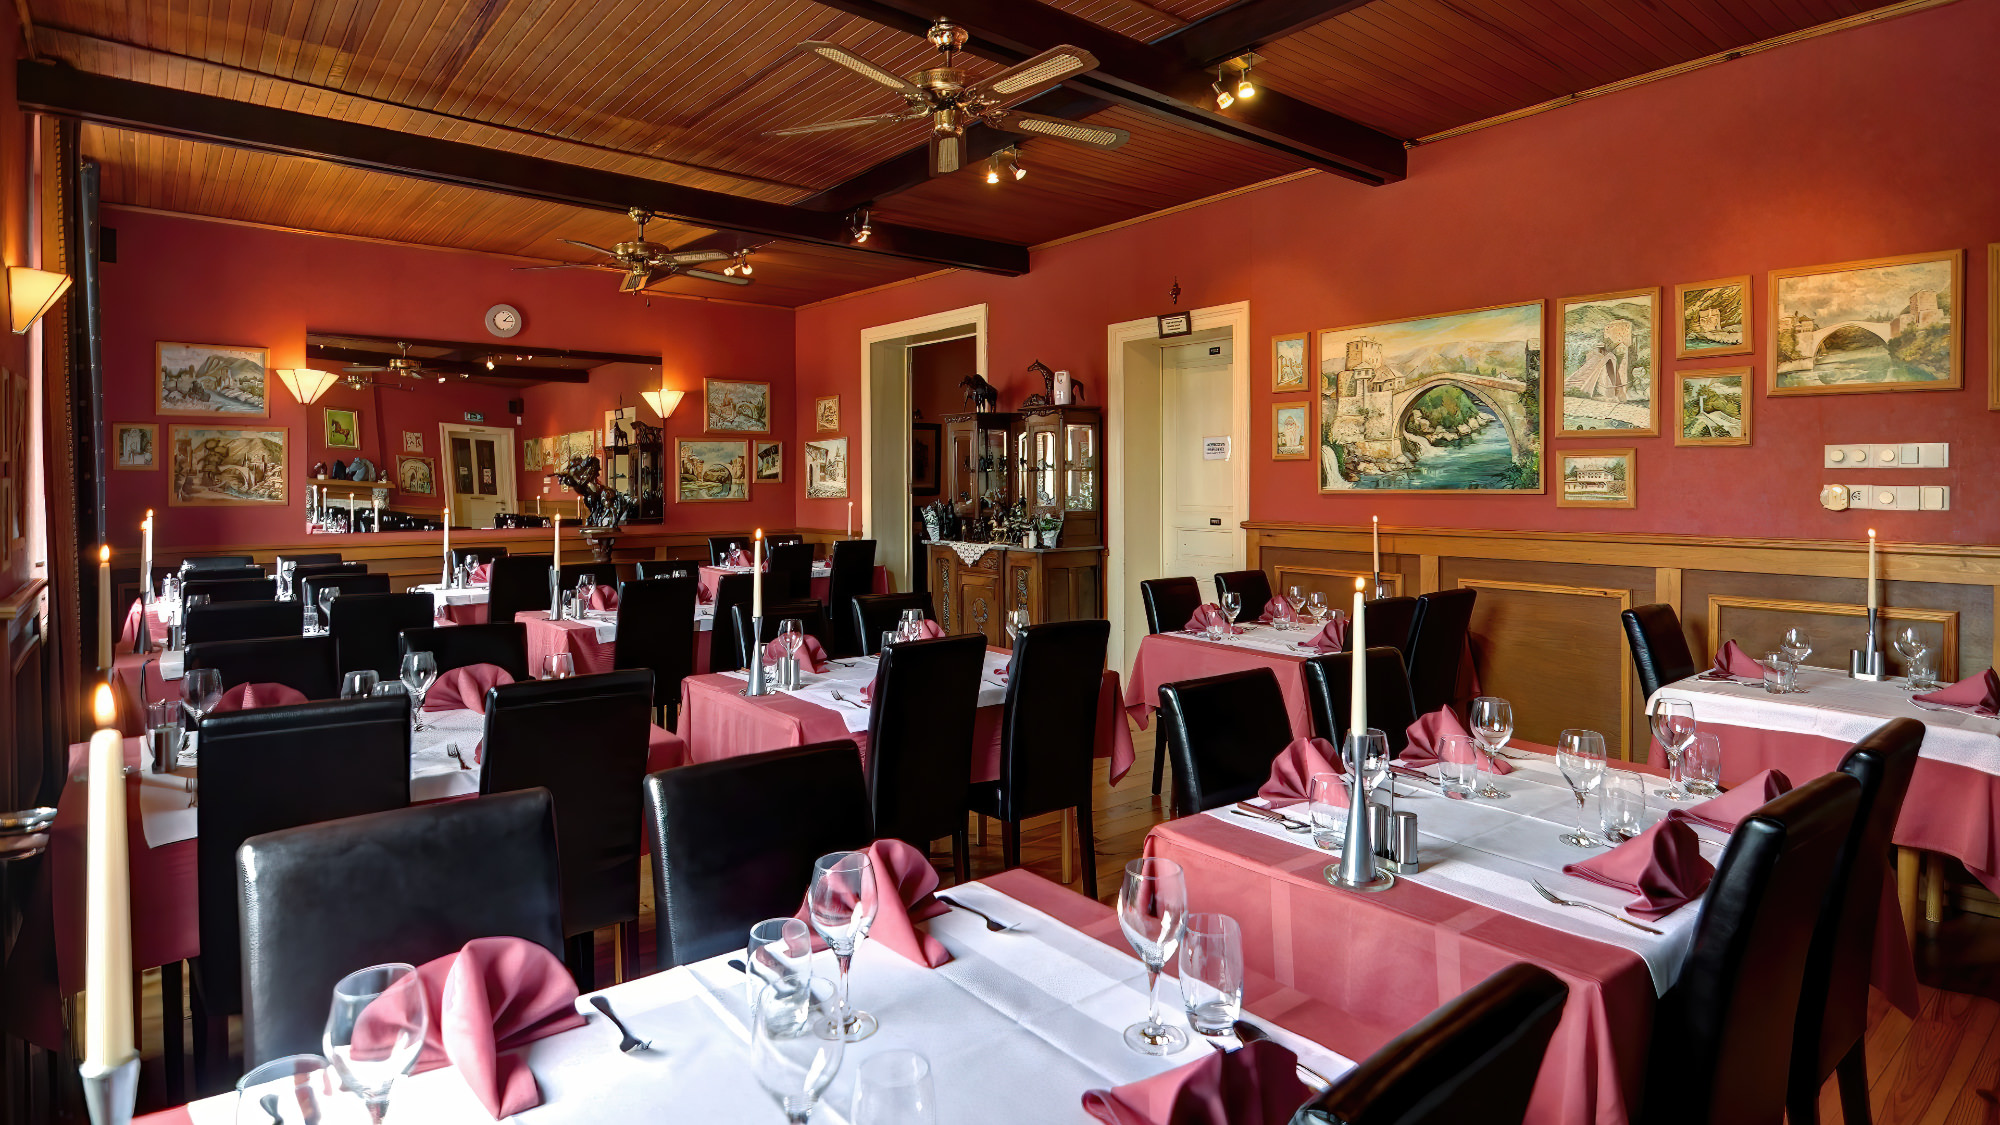 Impression du restaurant de Mostar avec des tables bien dressées